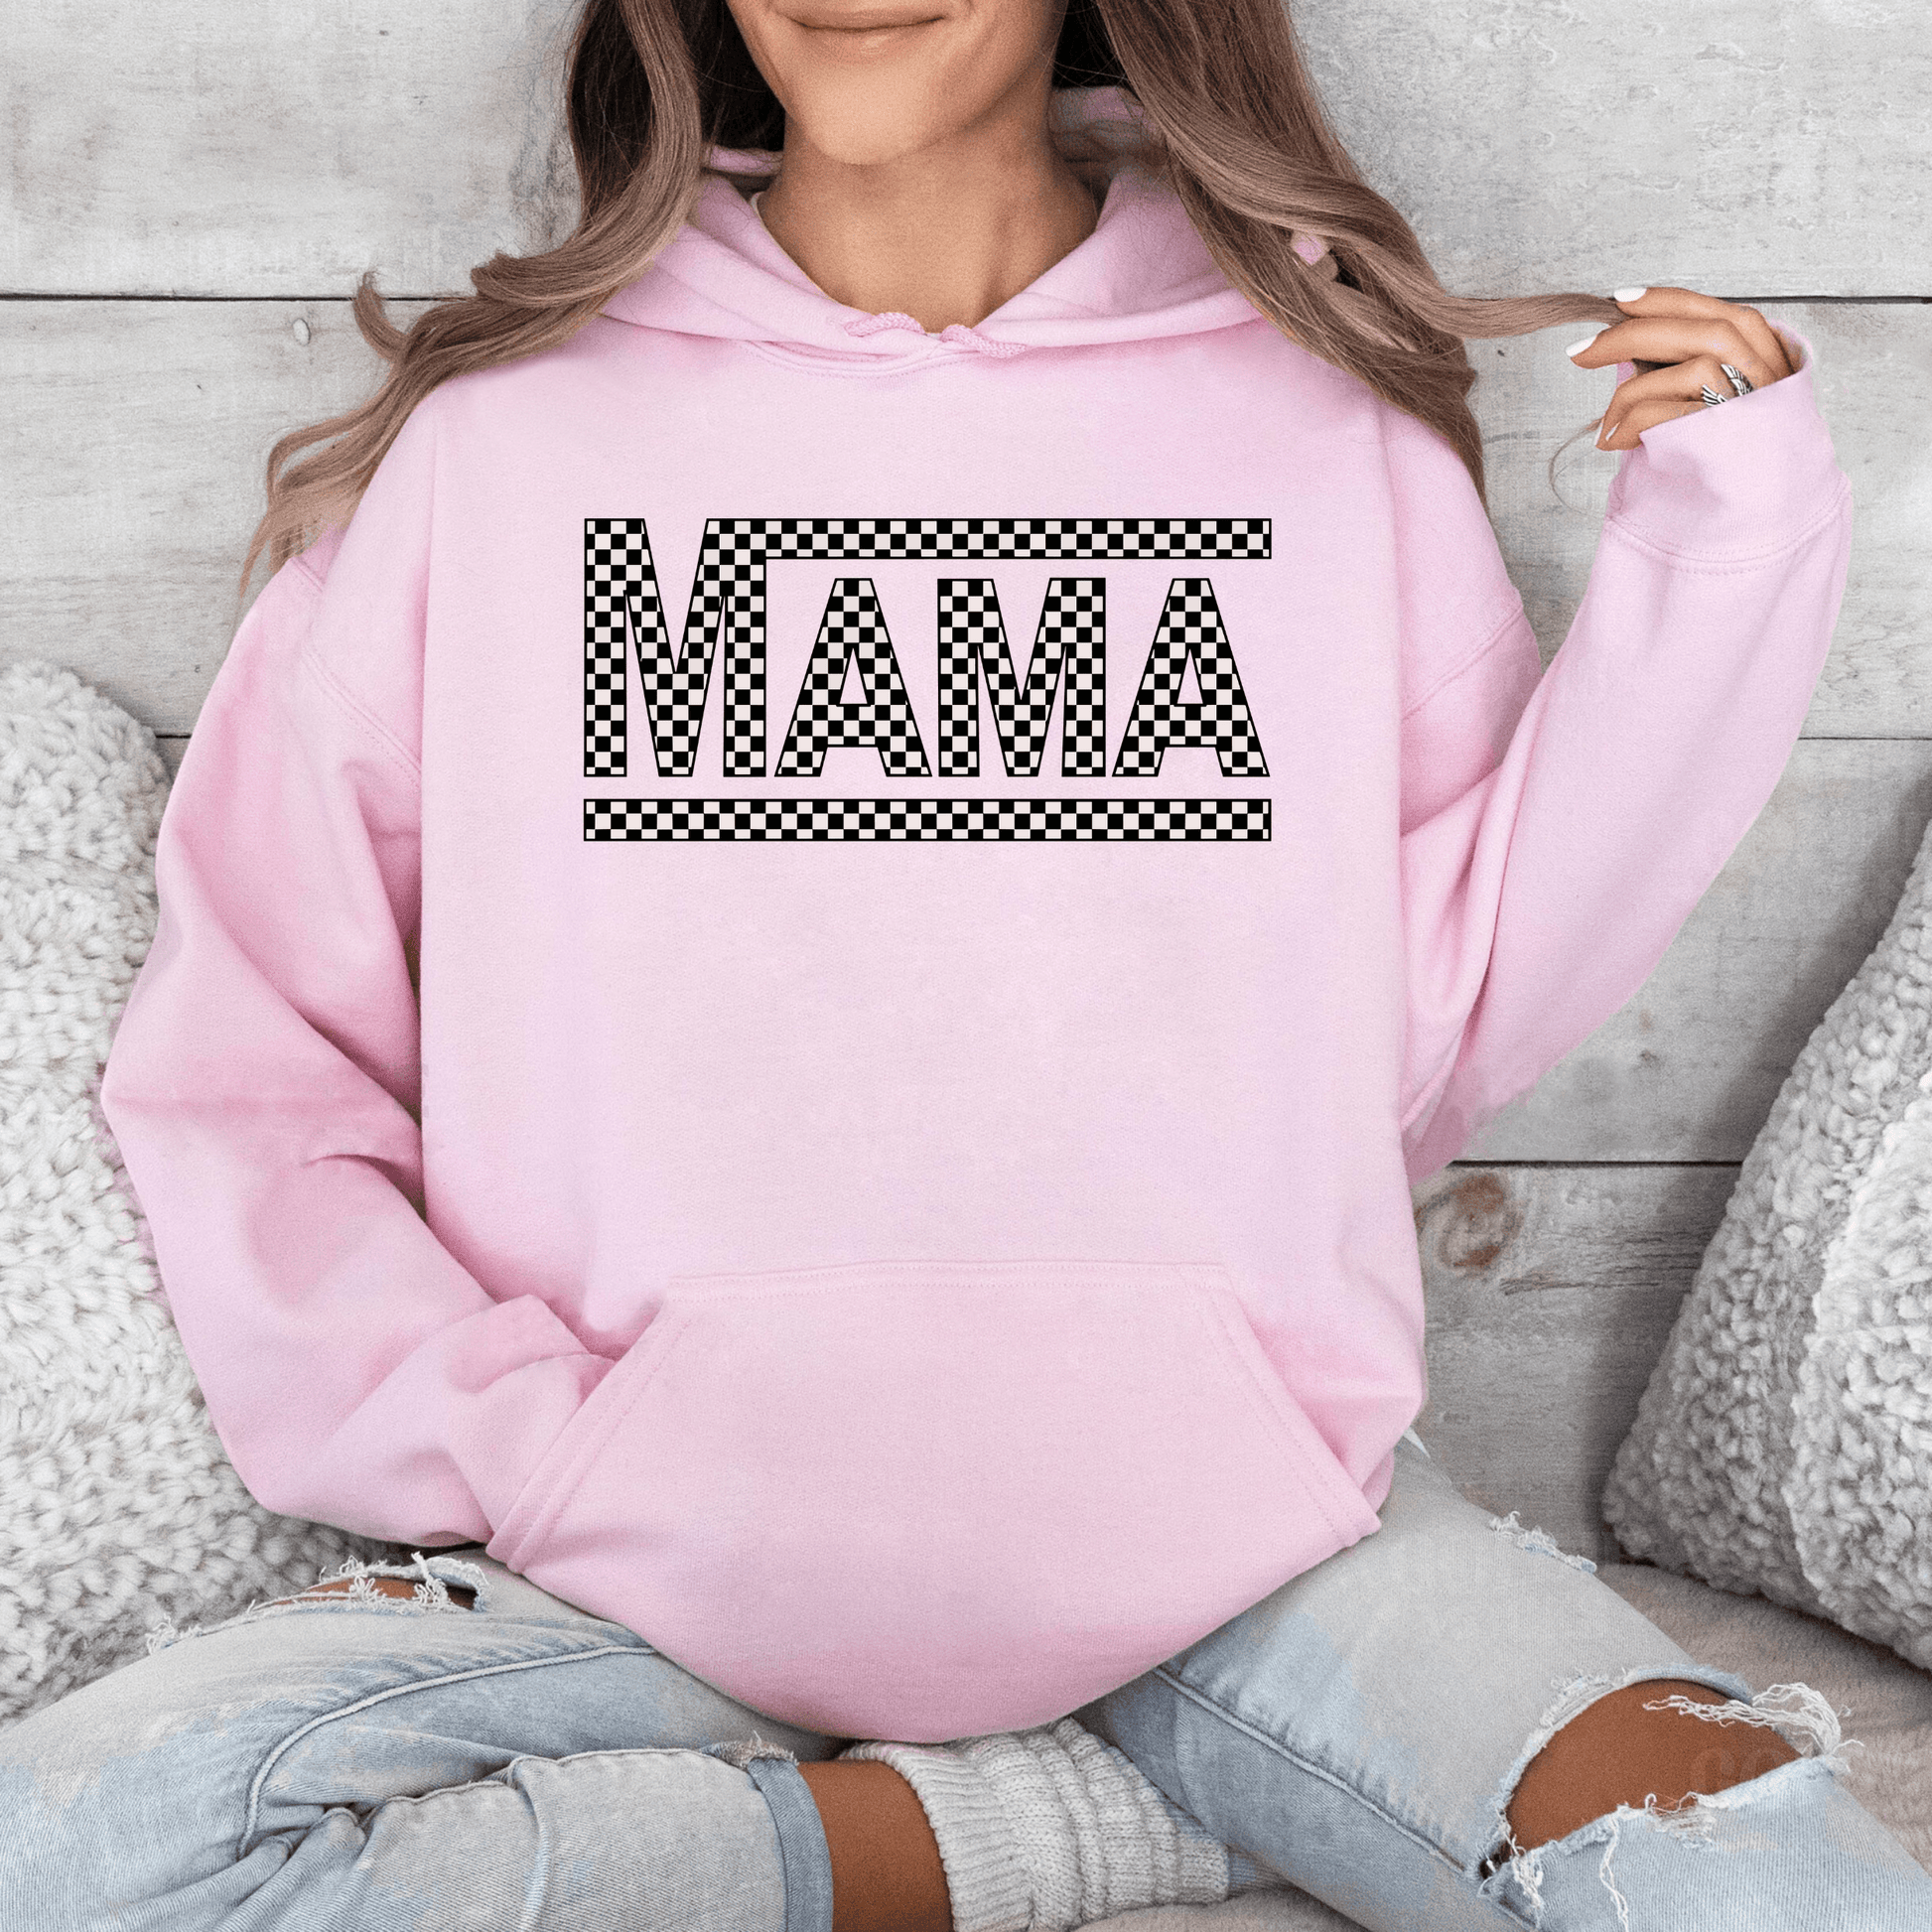 Retro-Schachbrett 'MAMA' Sweatshirt - Bequemes Crewneck für Mütter - Geschenk zum Muttertag - GiftHaus